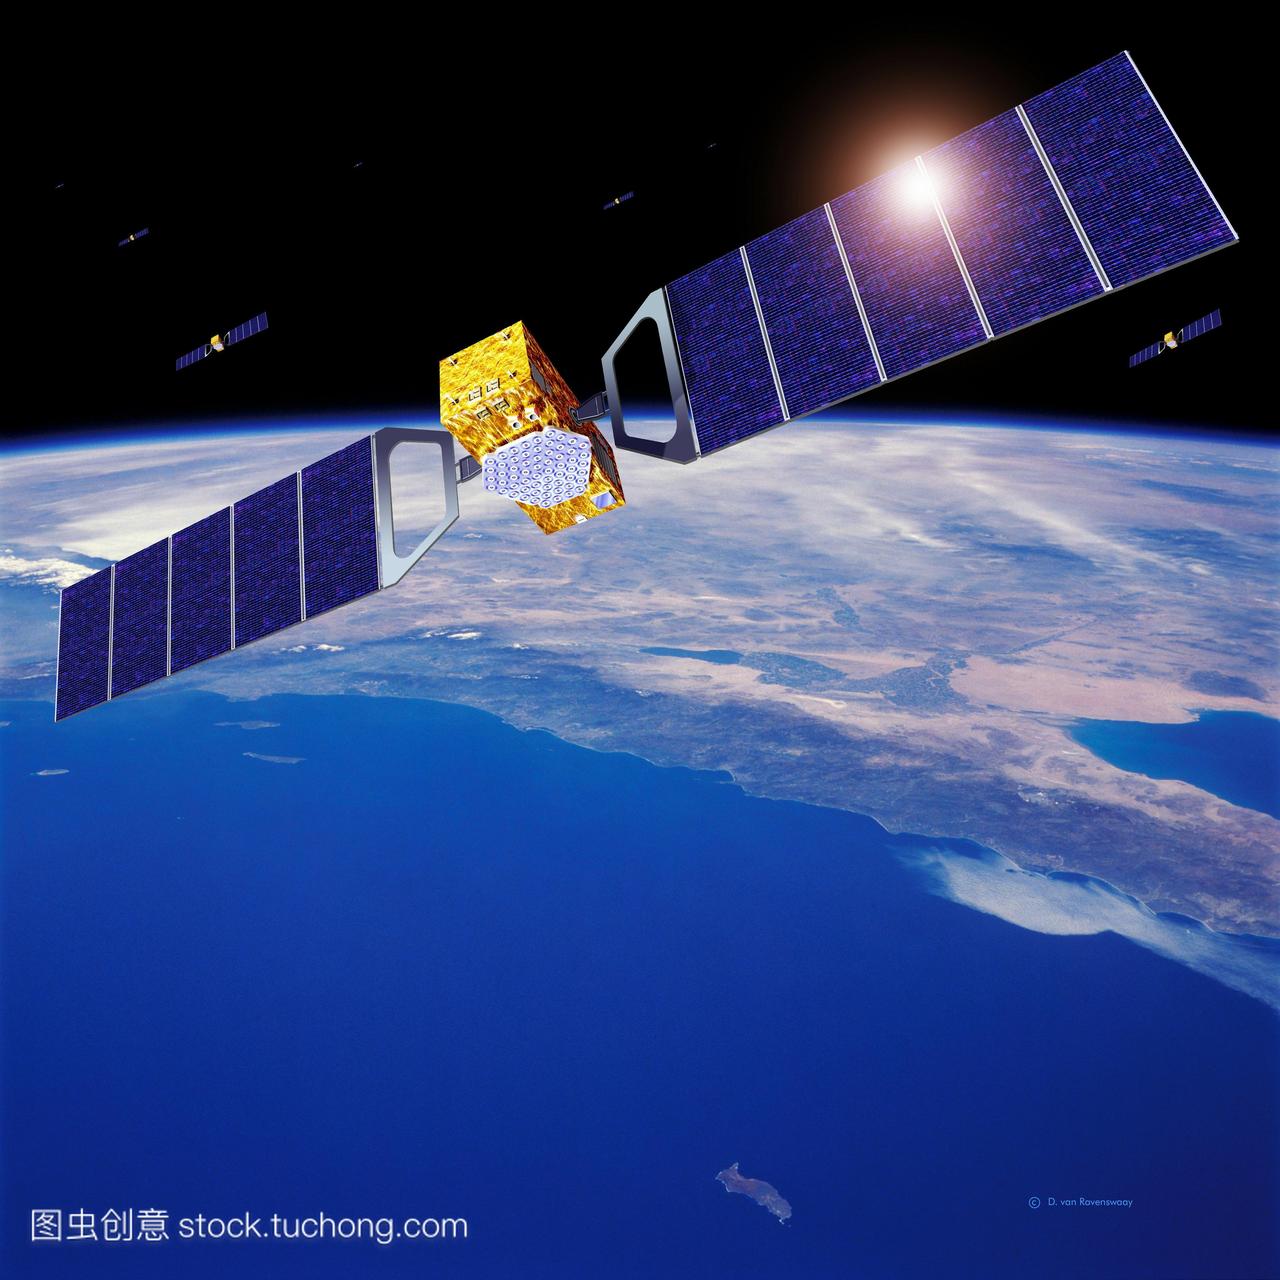 伽利略导航卫星网络。艺术品的几个欧洲伽利略